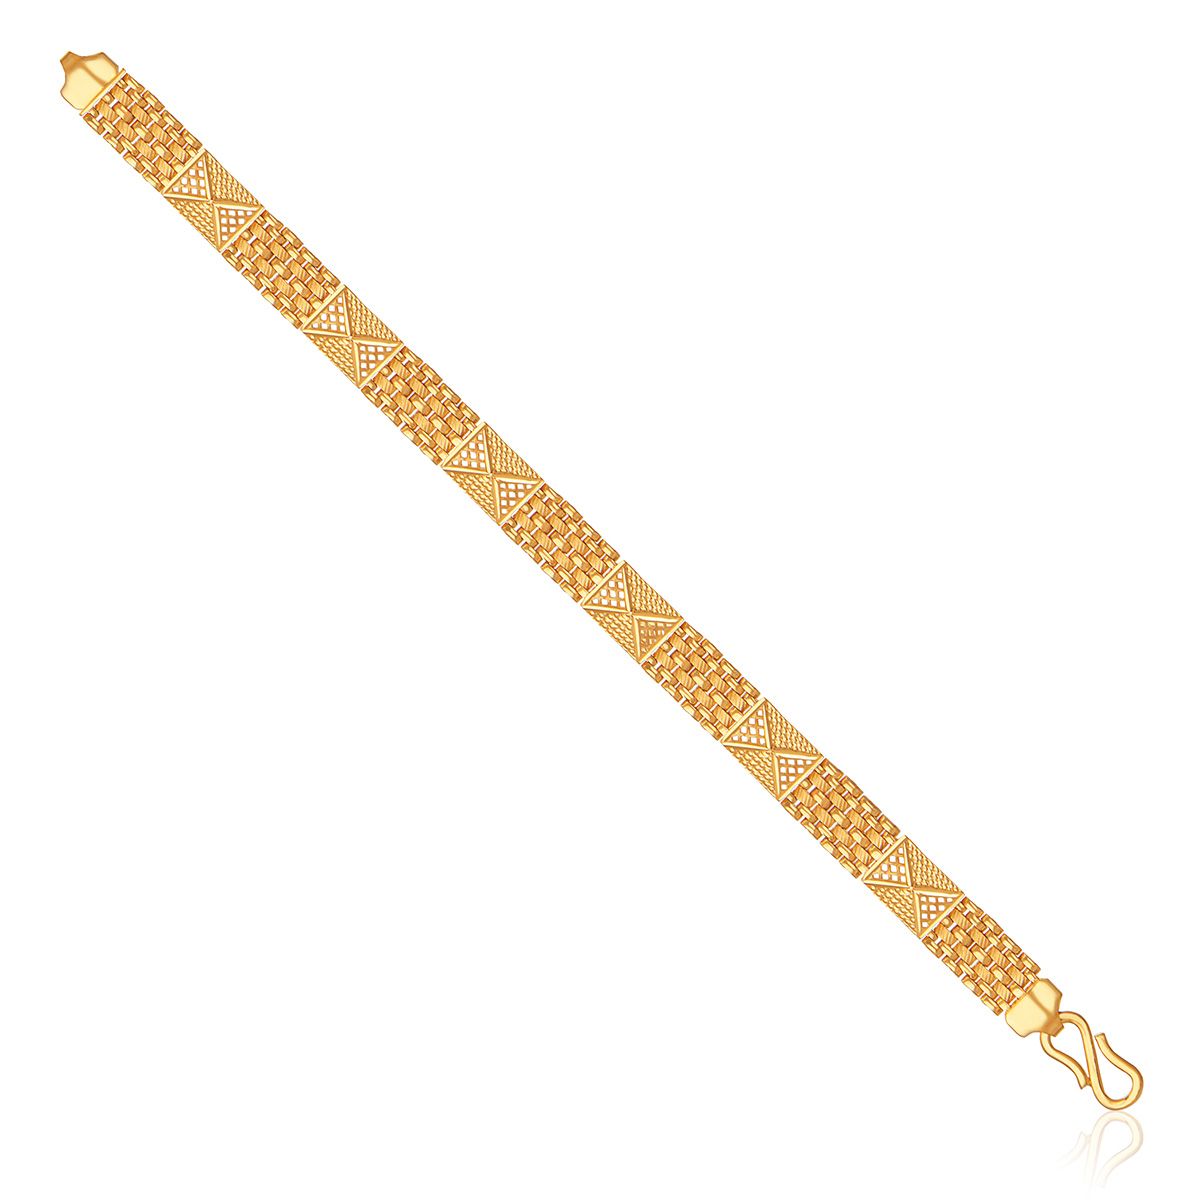 Gents Link Bracelet in Sterling Silver Pure 925 BIS Hallmarked | JewelDealz